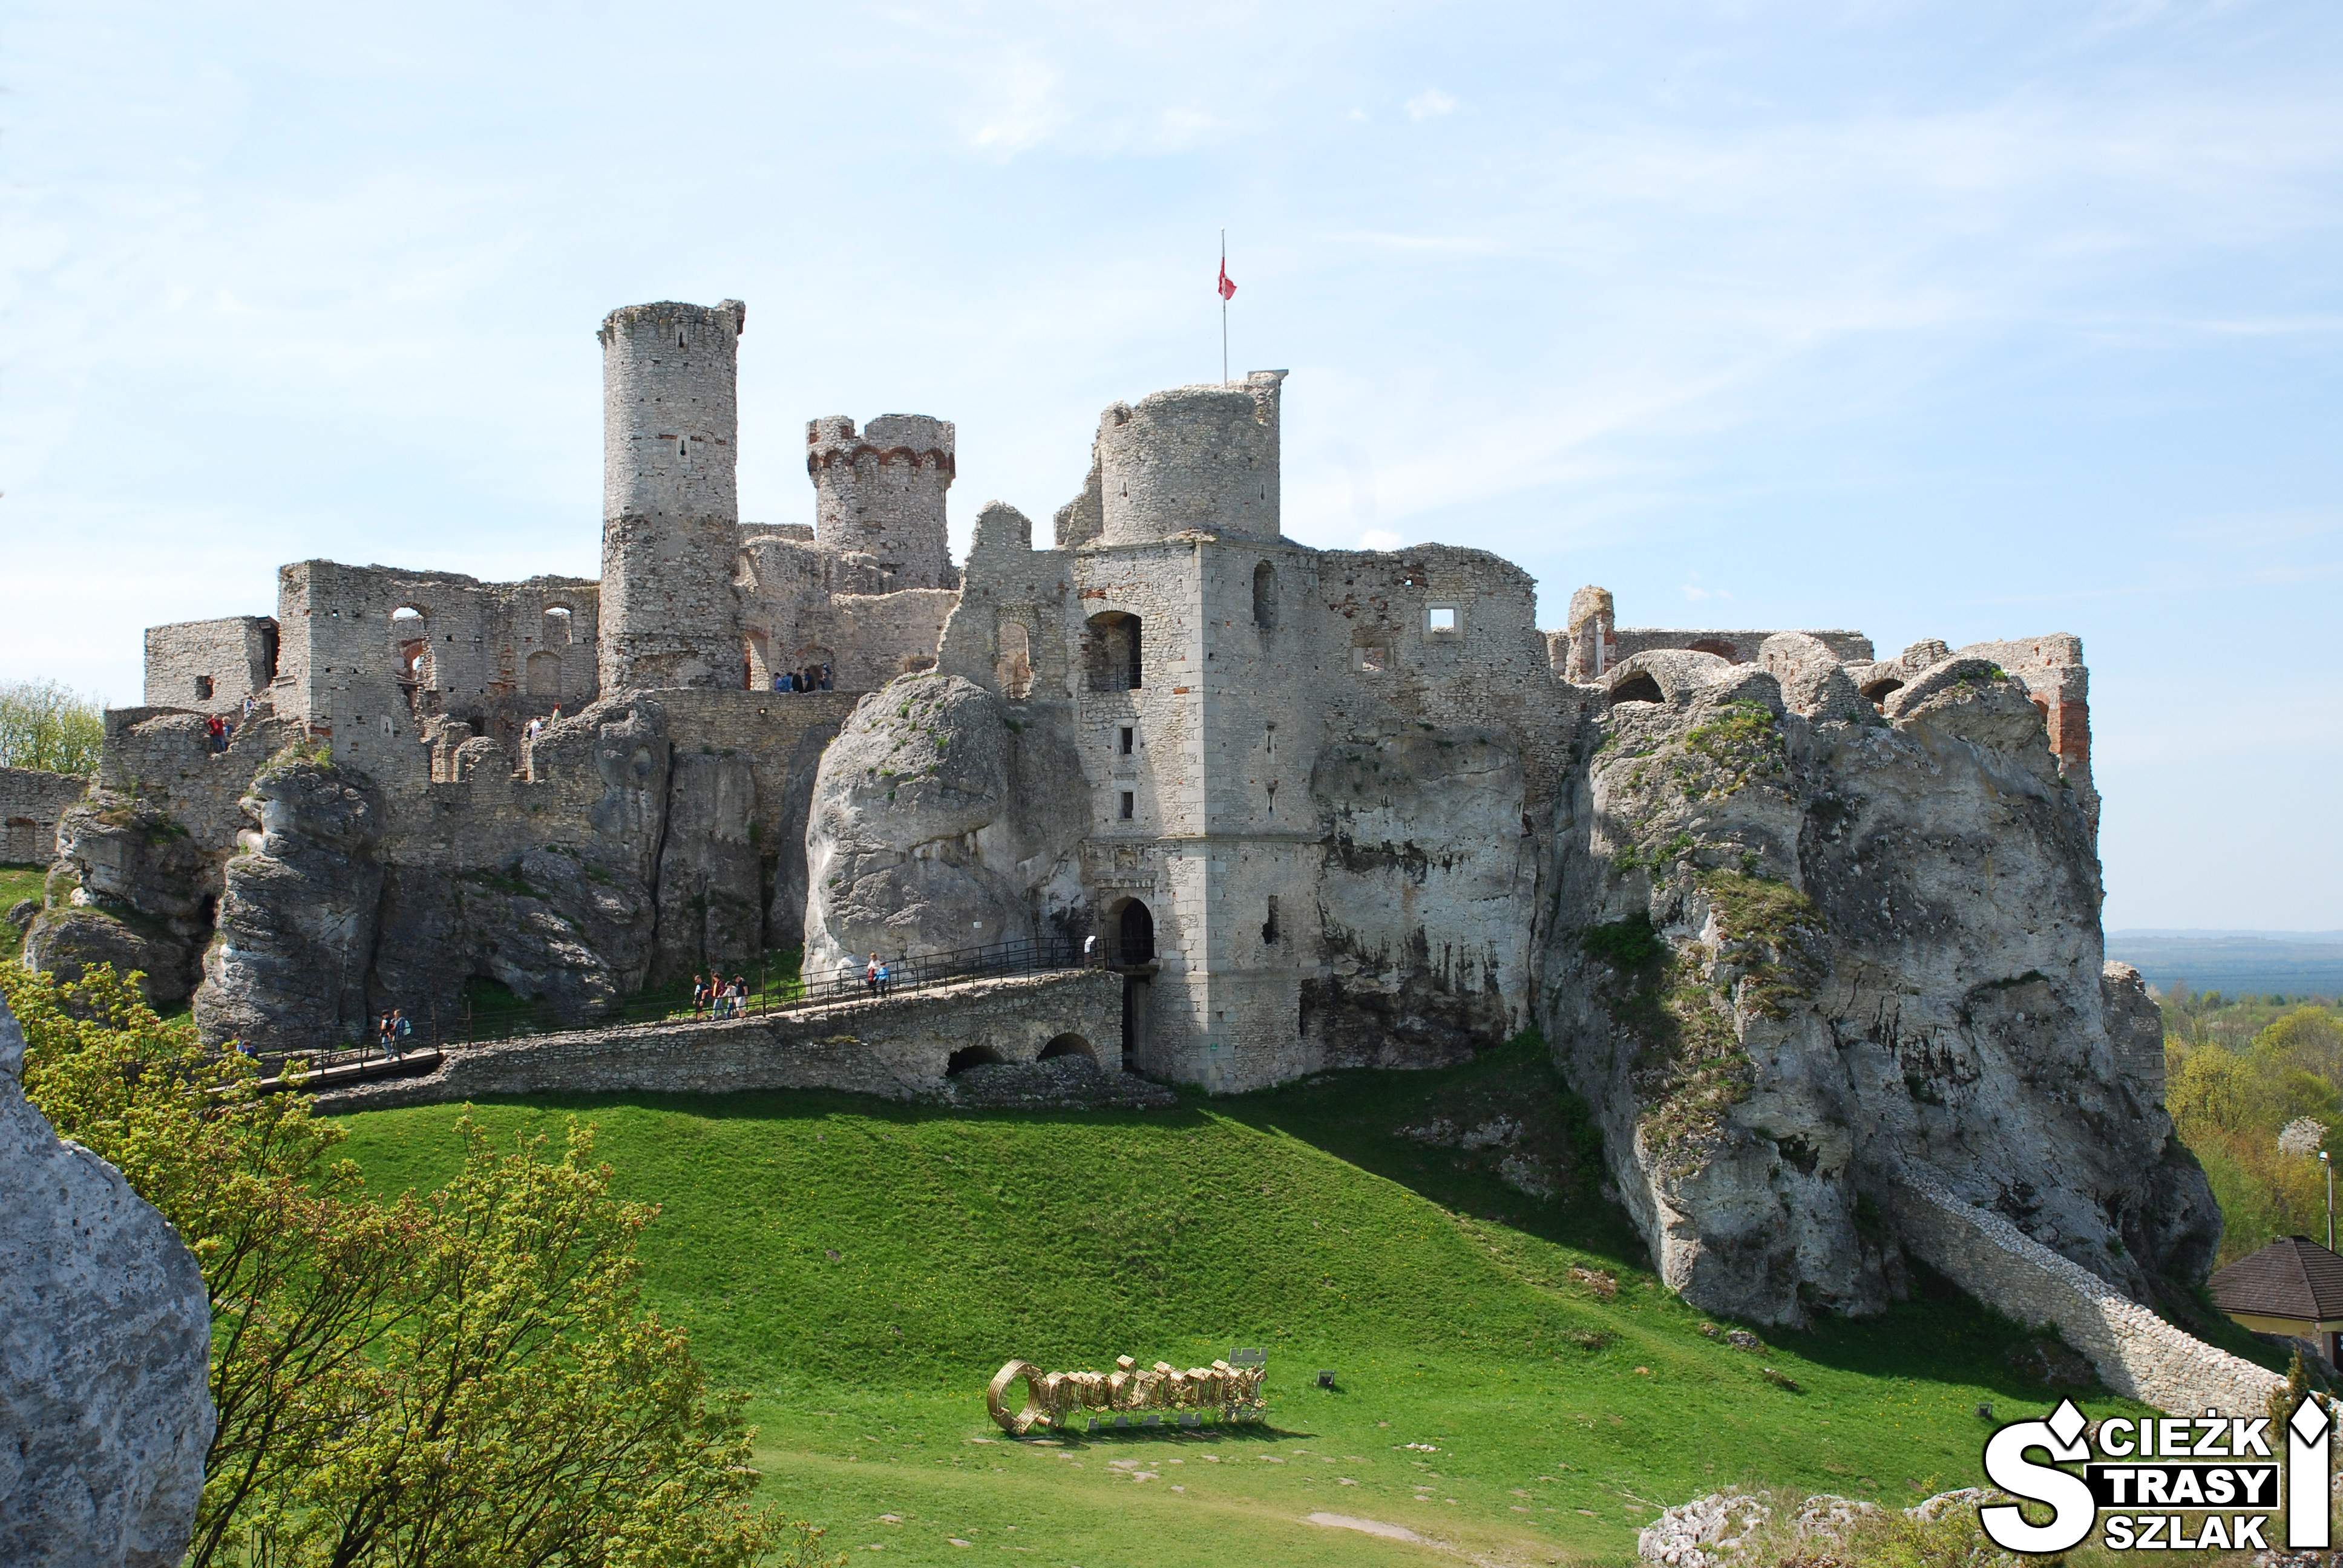 Ruiny zamku wzniesionego na skale wapiennej z dużym złotym napisem Ogrodzieniec na wzgórzu